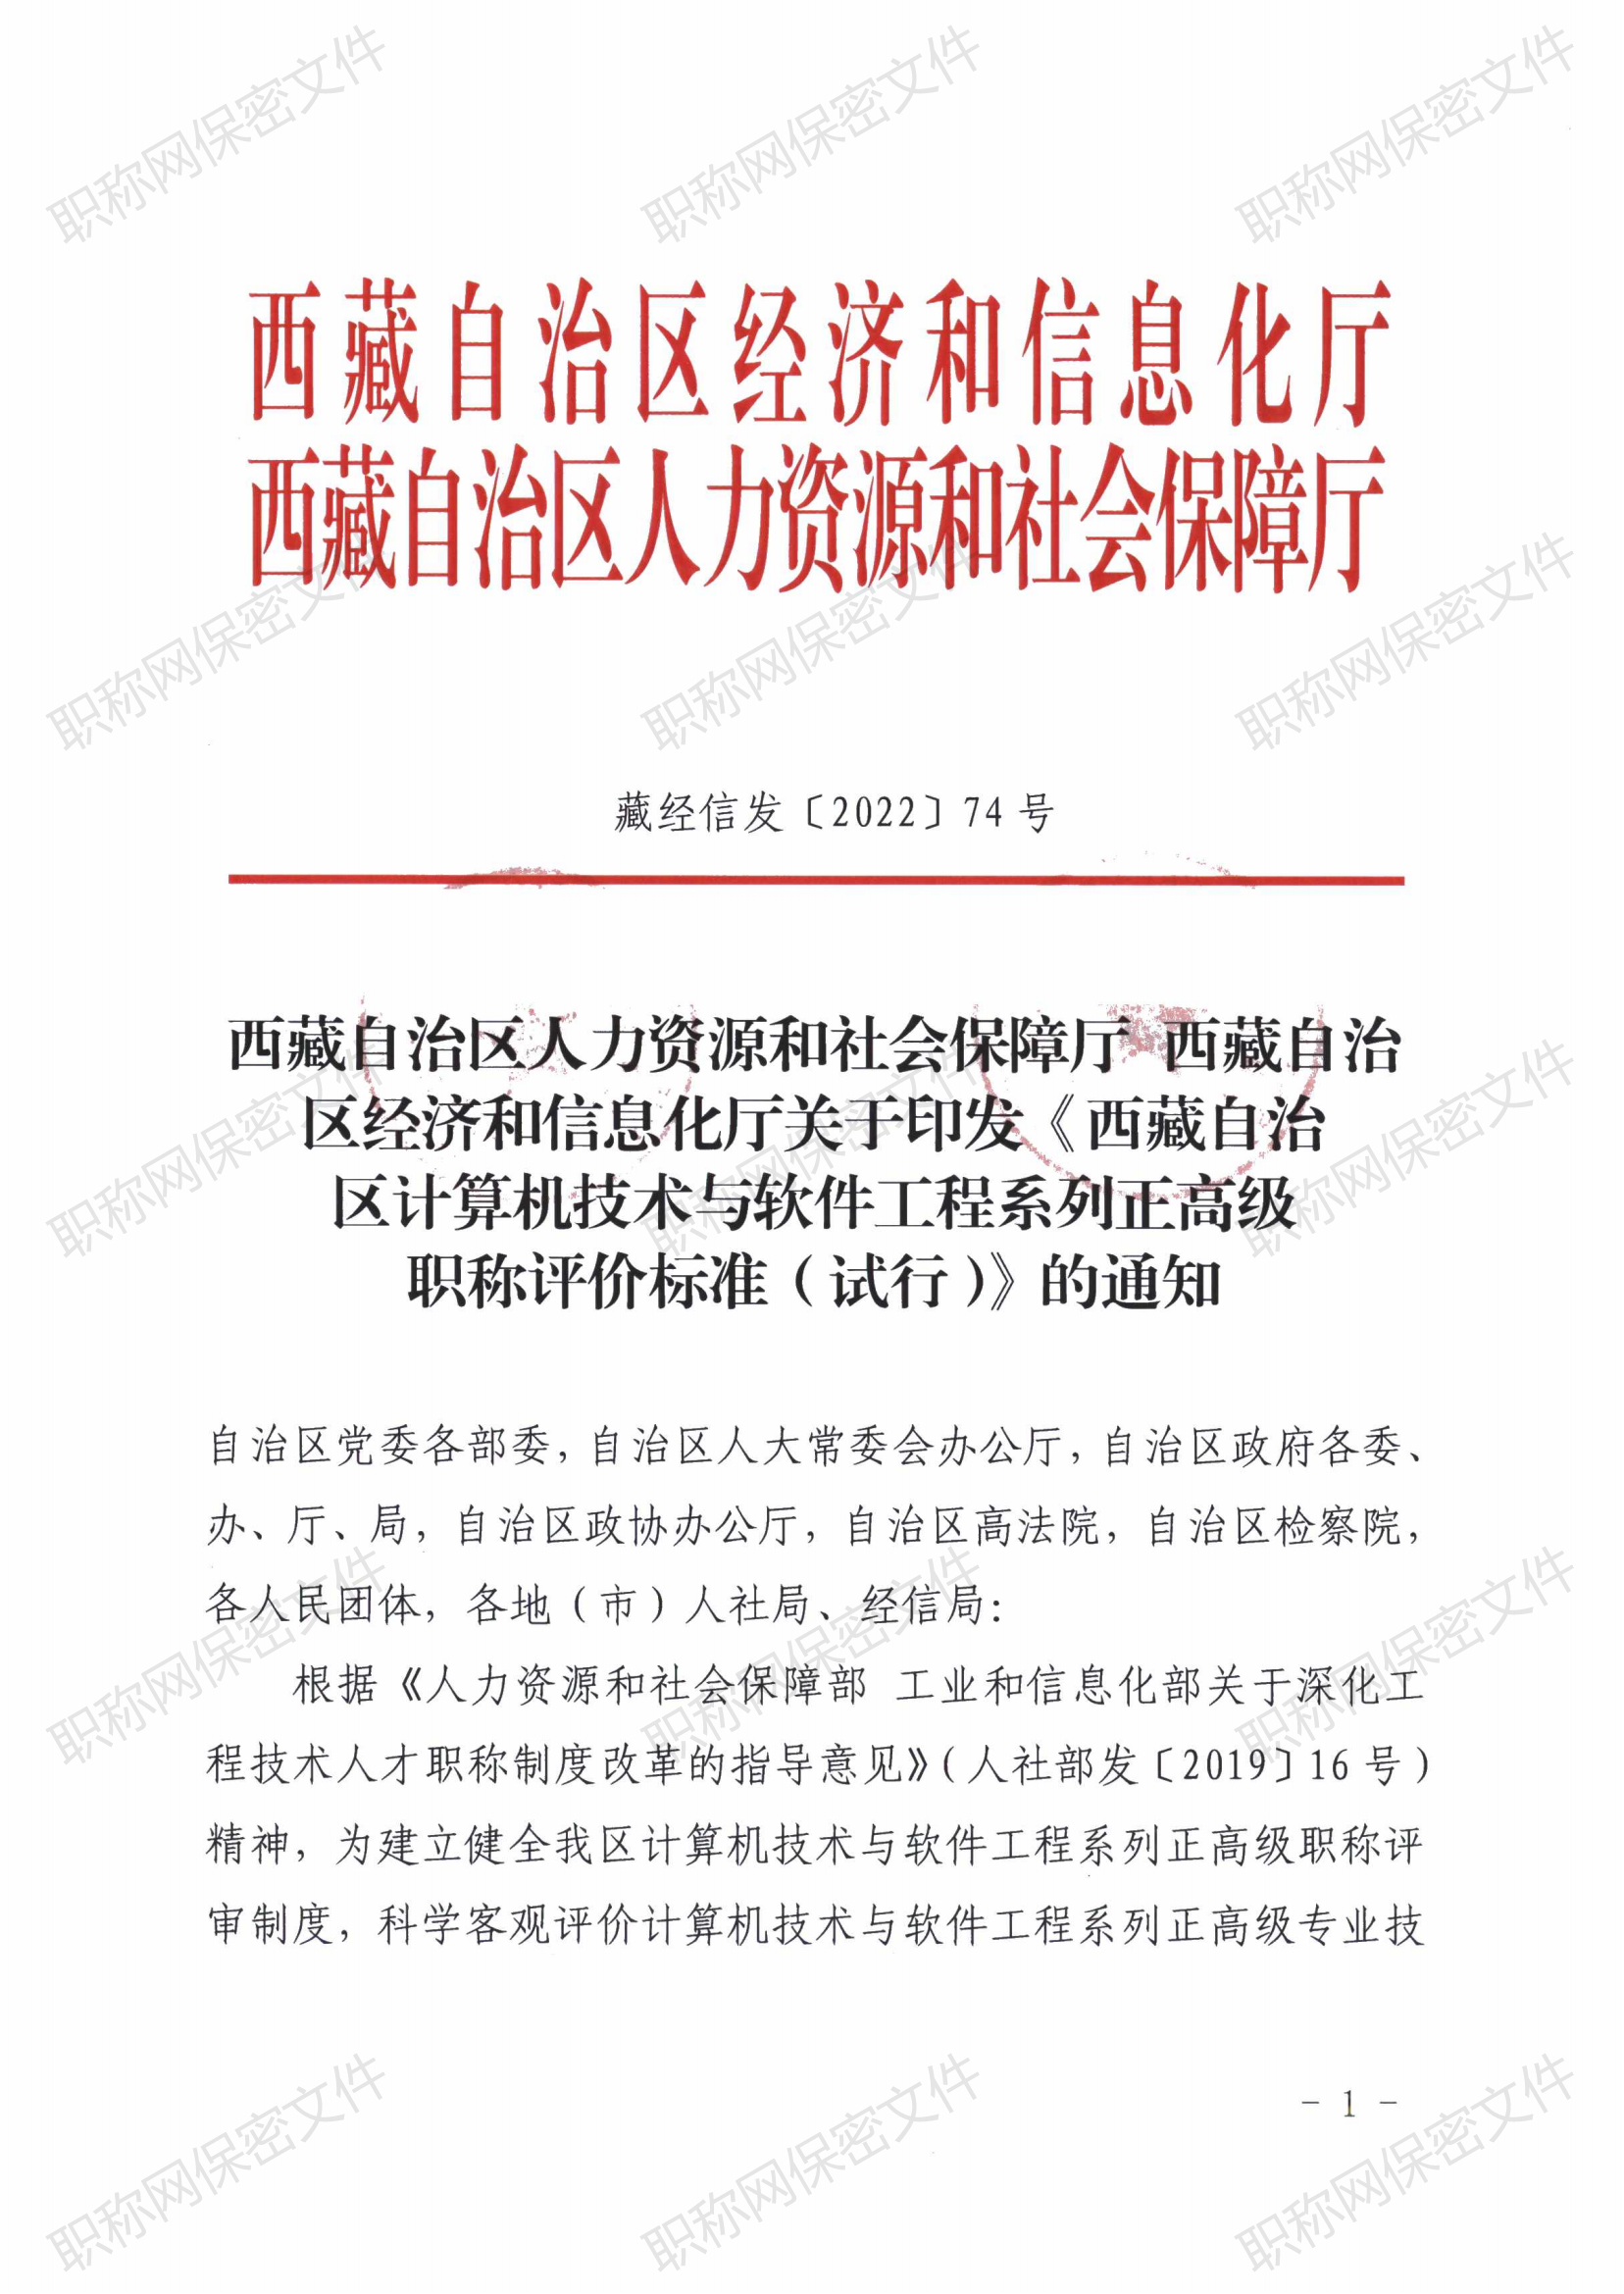 西藏自治区计算机技术与软件工程系列正高级职称评价标准(试行)_00.png